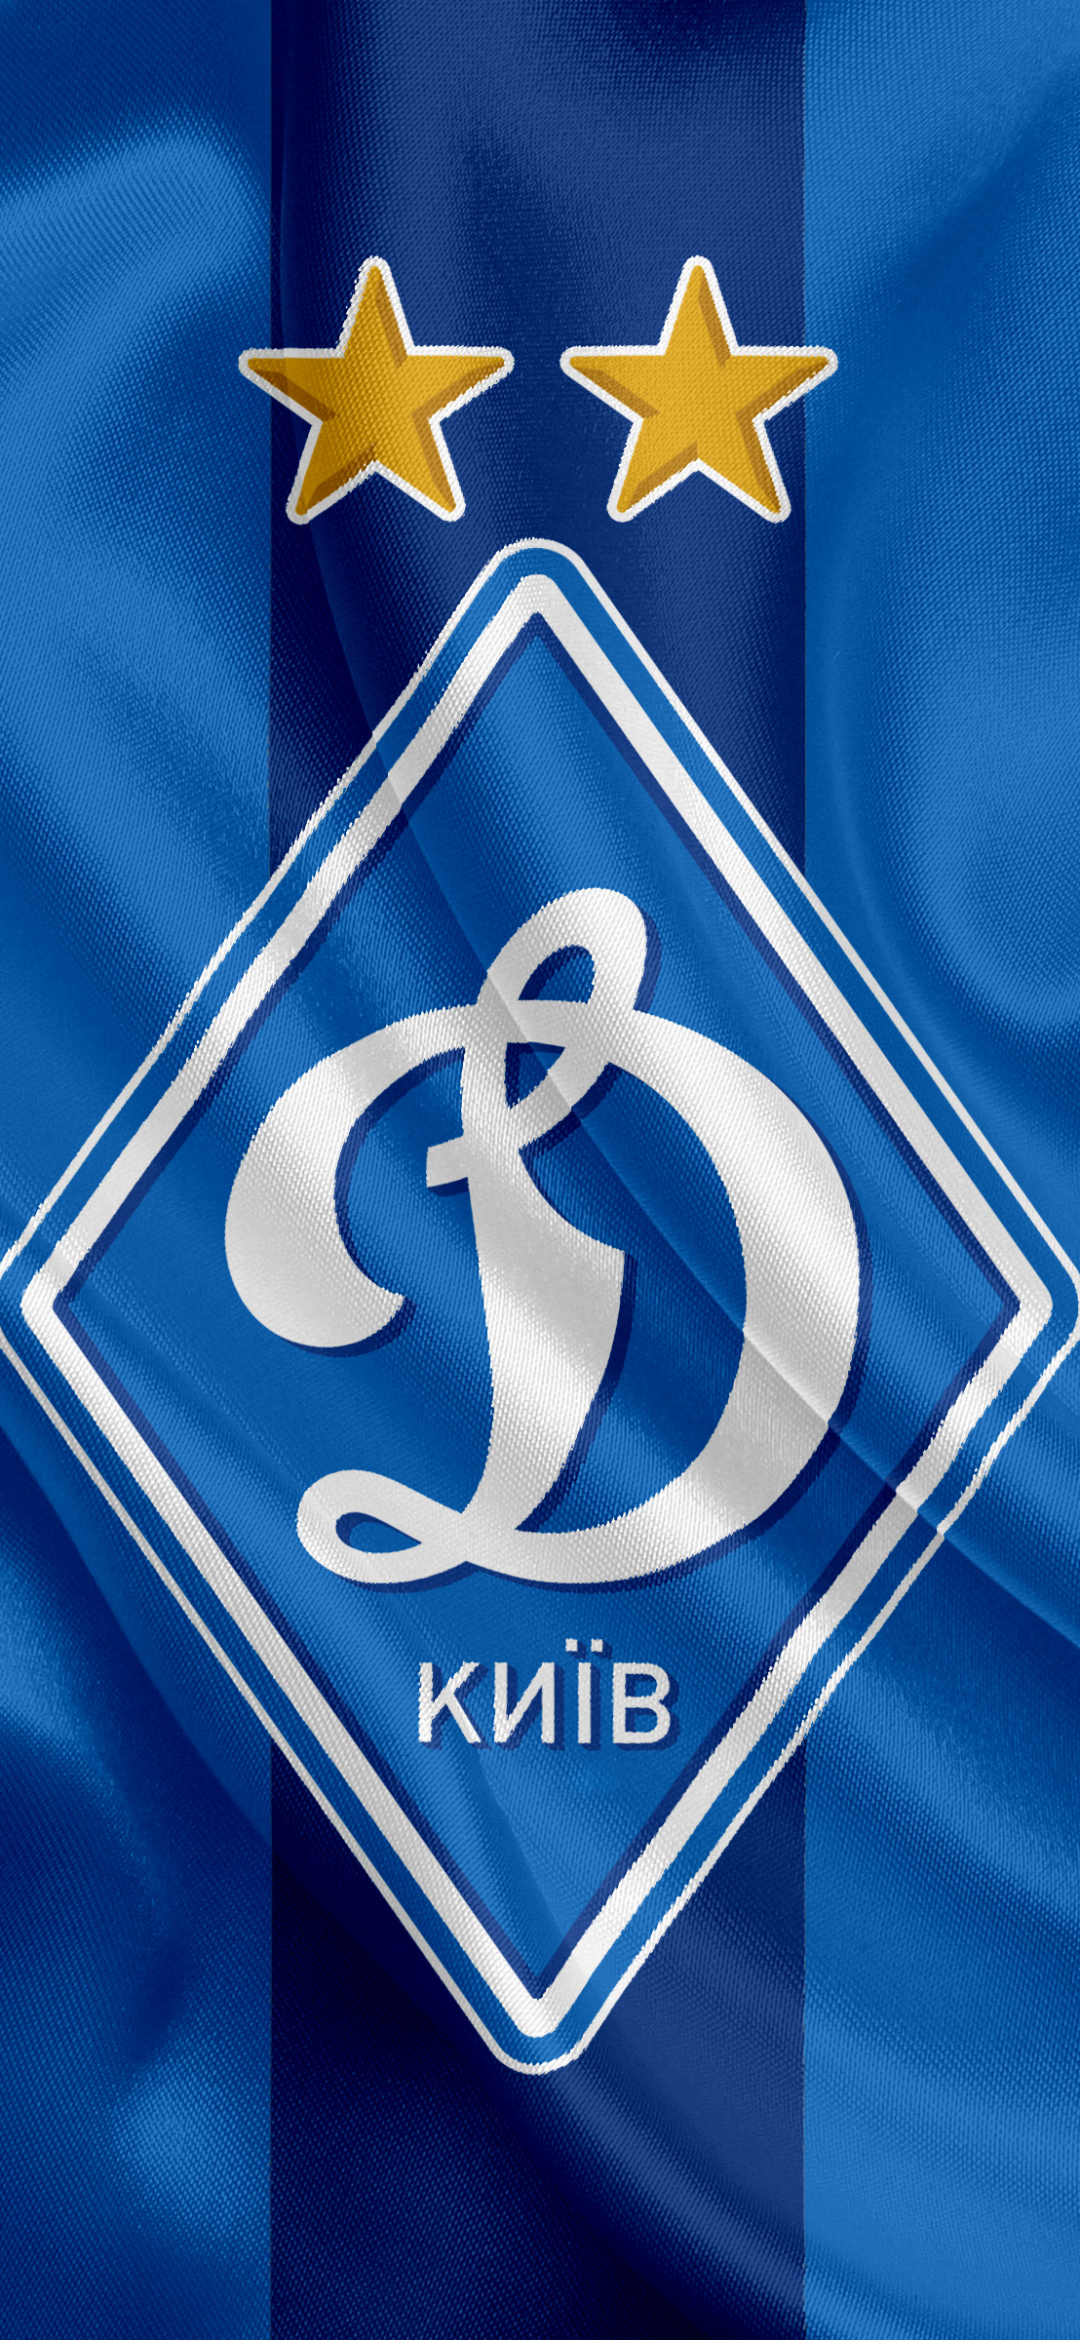 sports, fc dynamo kyiv, emblem, soccer, logo mobile wallpaper